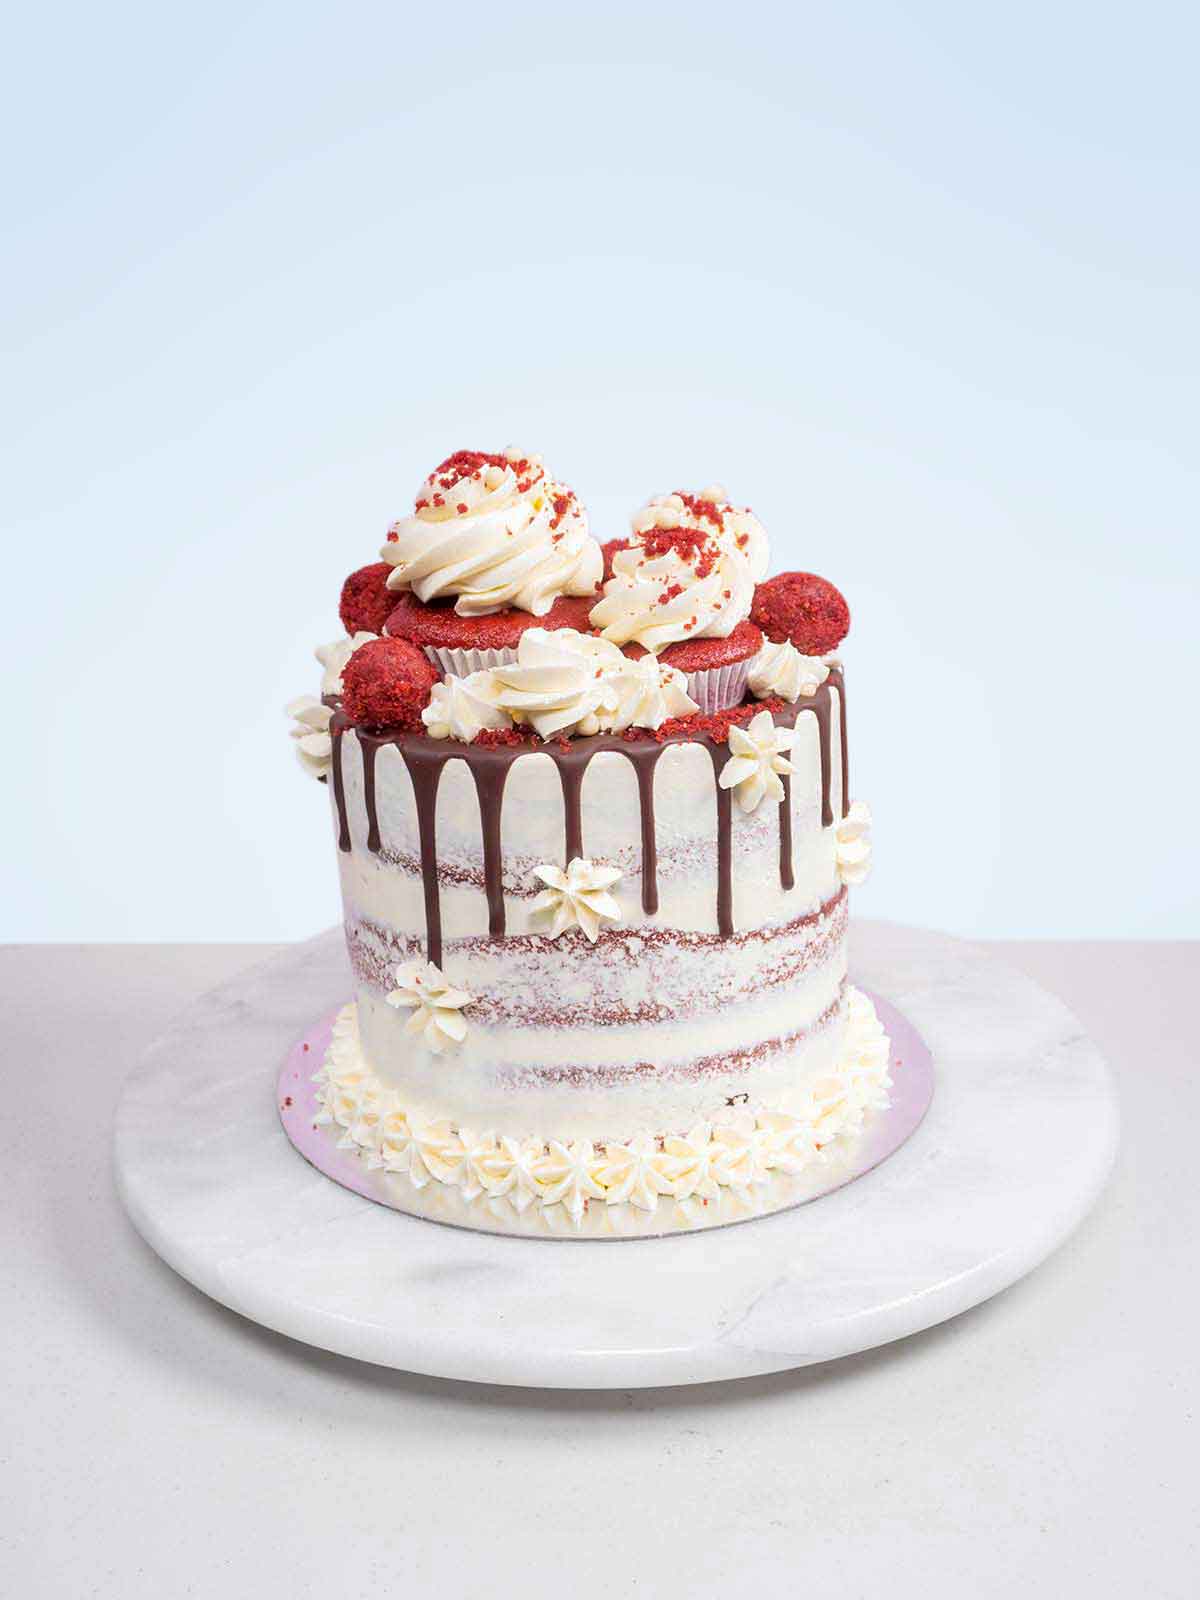 Confetti Cake with Vanilla-Sour Cream Frosting